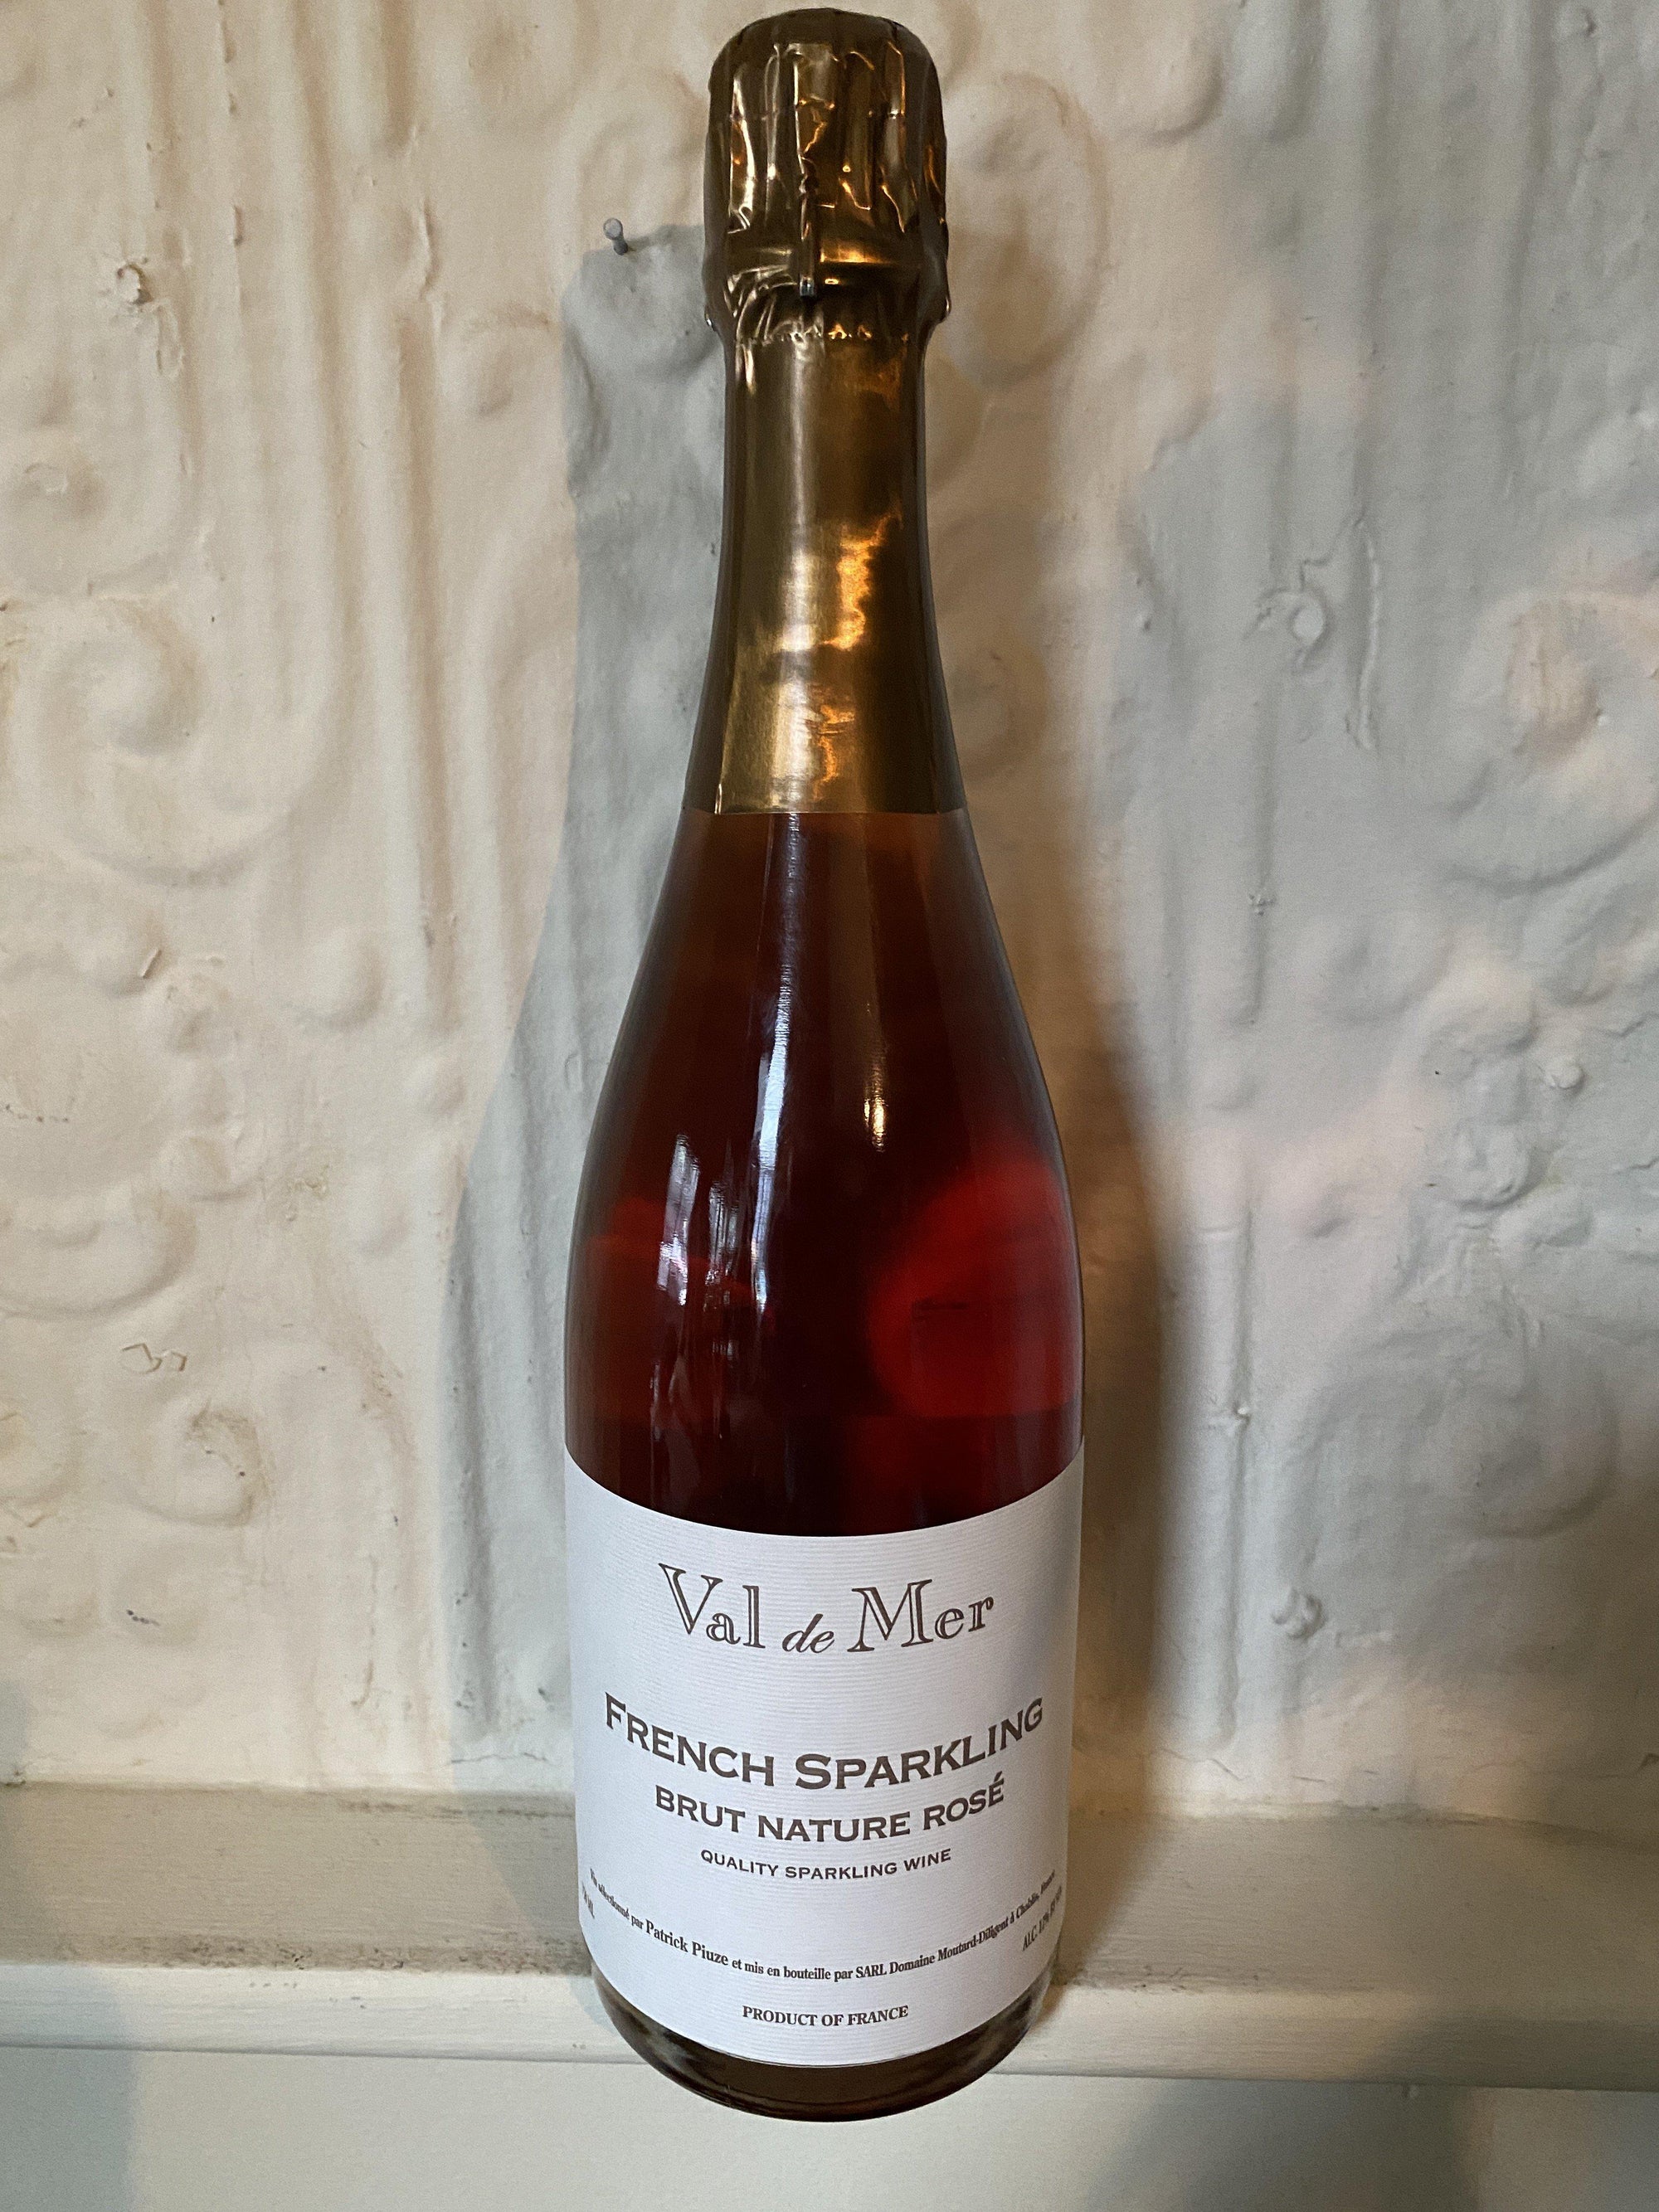 Val de Mer Brut Nature Rose, Patrick Piuze NV (Burgundy, France)-Wine-Bibber & Bell